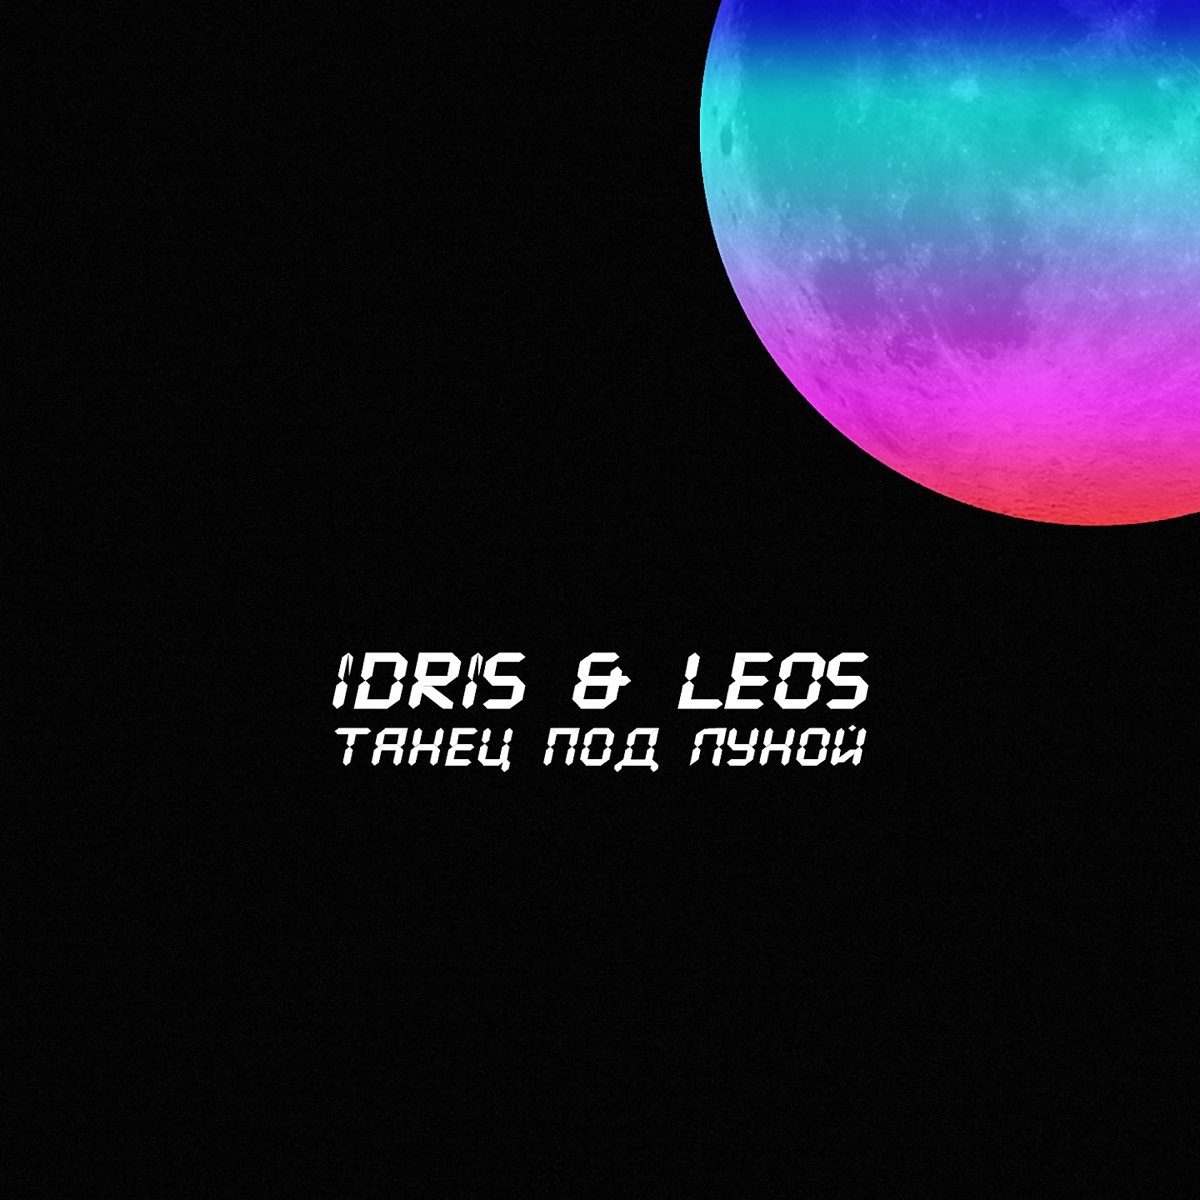 Idris Leos. Idris Leos обложка. Idris & Leos - образ (Luna ABN Remix). Любить как прежде Idris Leos. Мы танцуем под луной текст